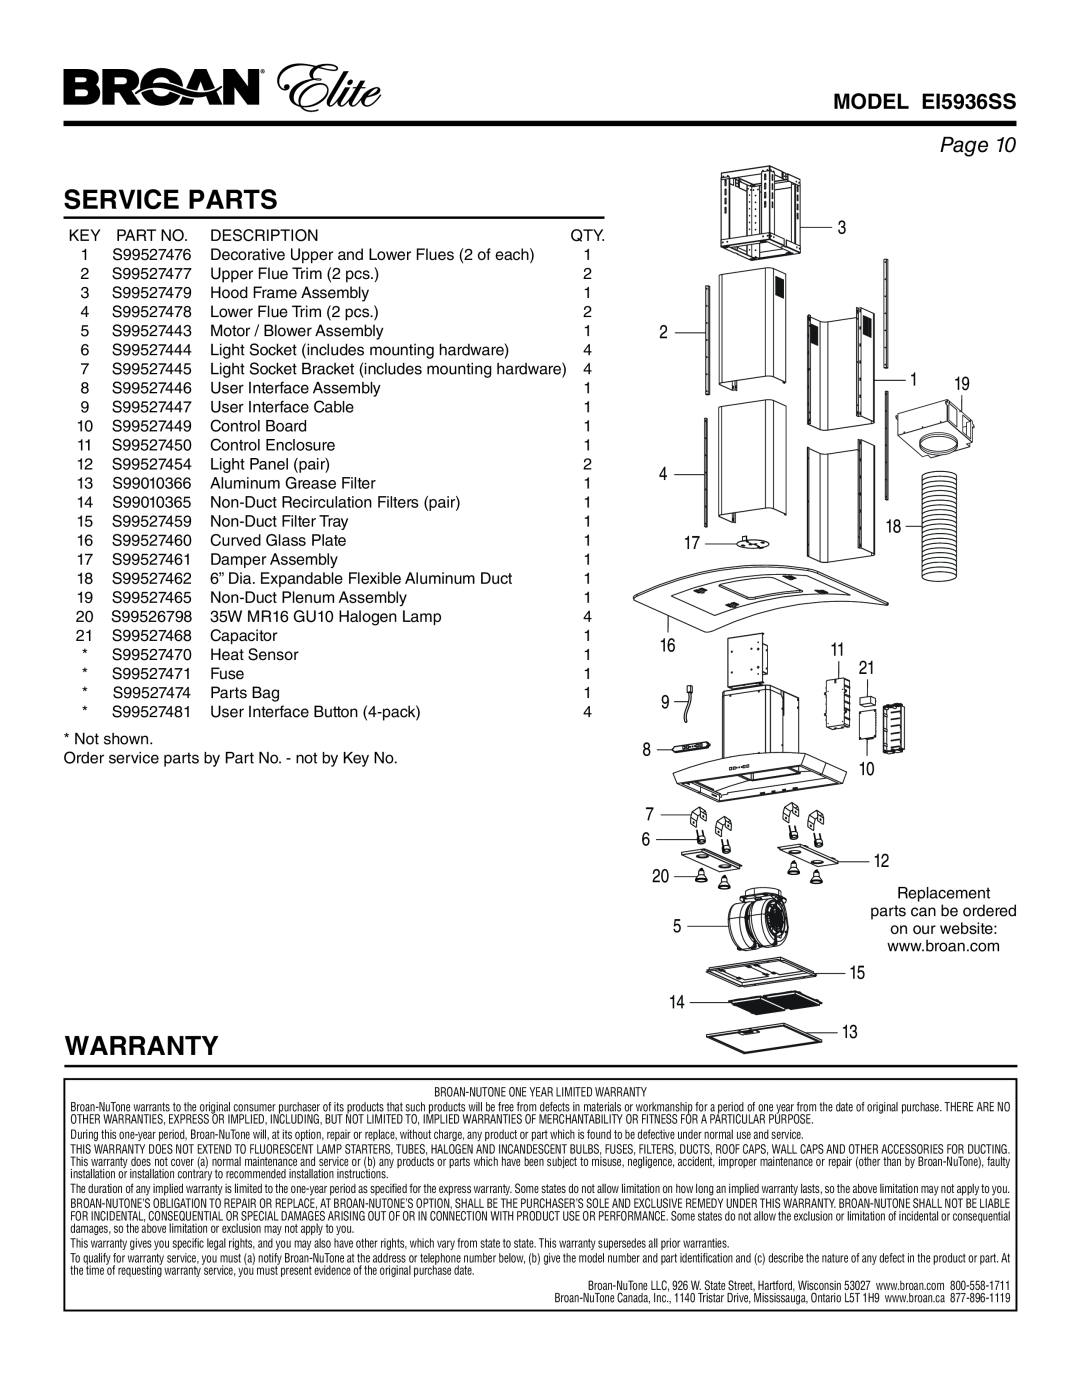 Broan warranty Service Parts, Warranty, MODEL EI5936SS, Page 